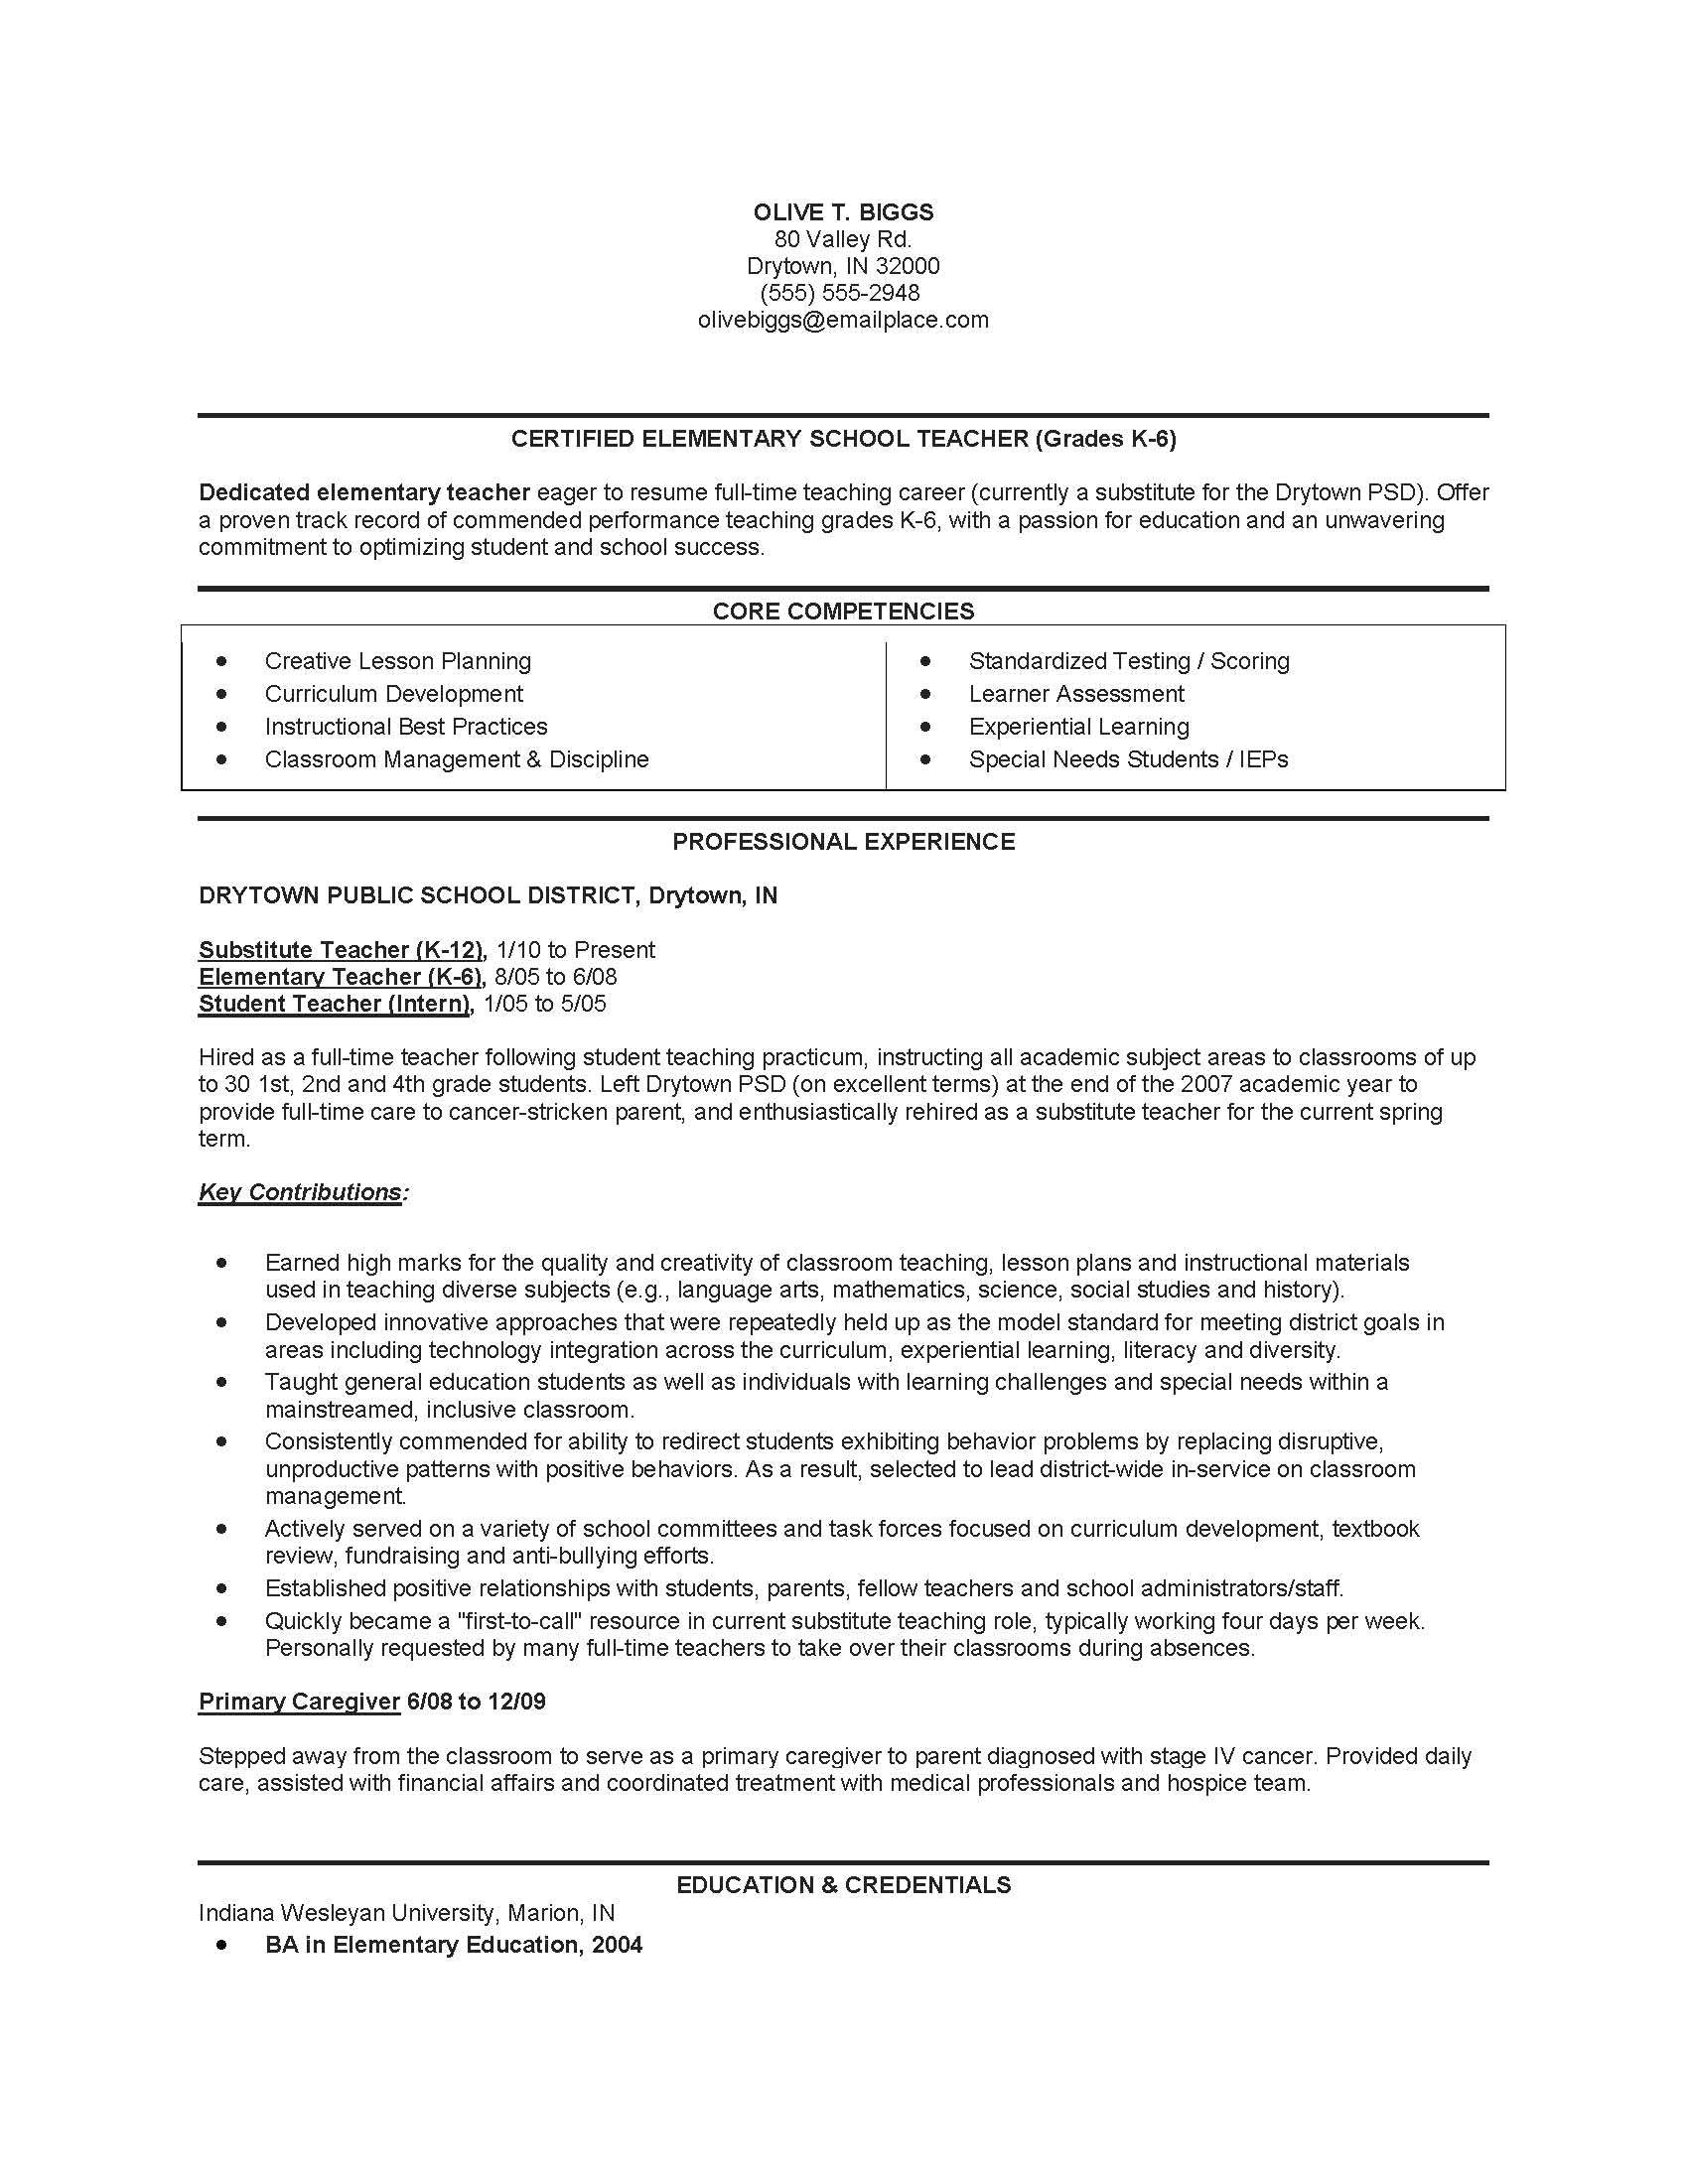 impressive resume for new teacher applicant for resume examples sample resume for teaching job sample resume for